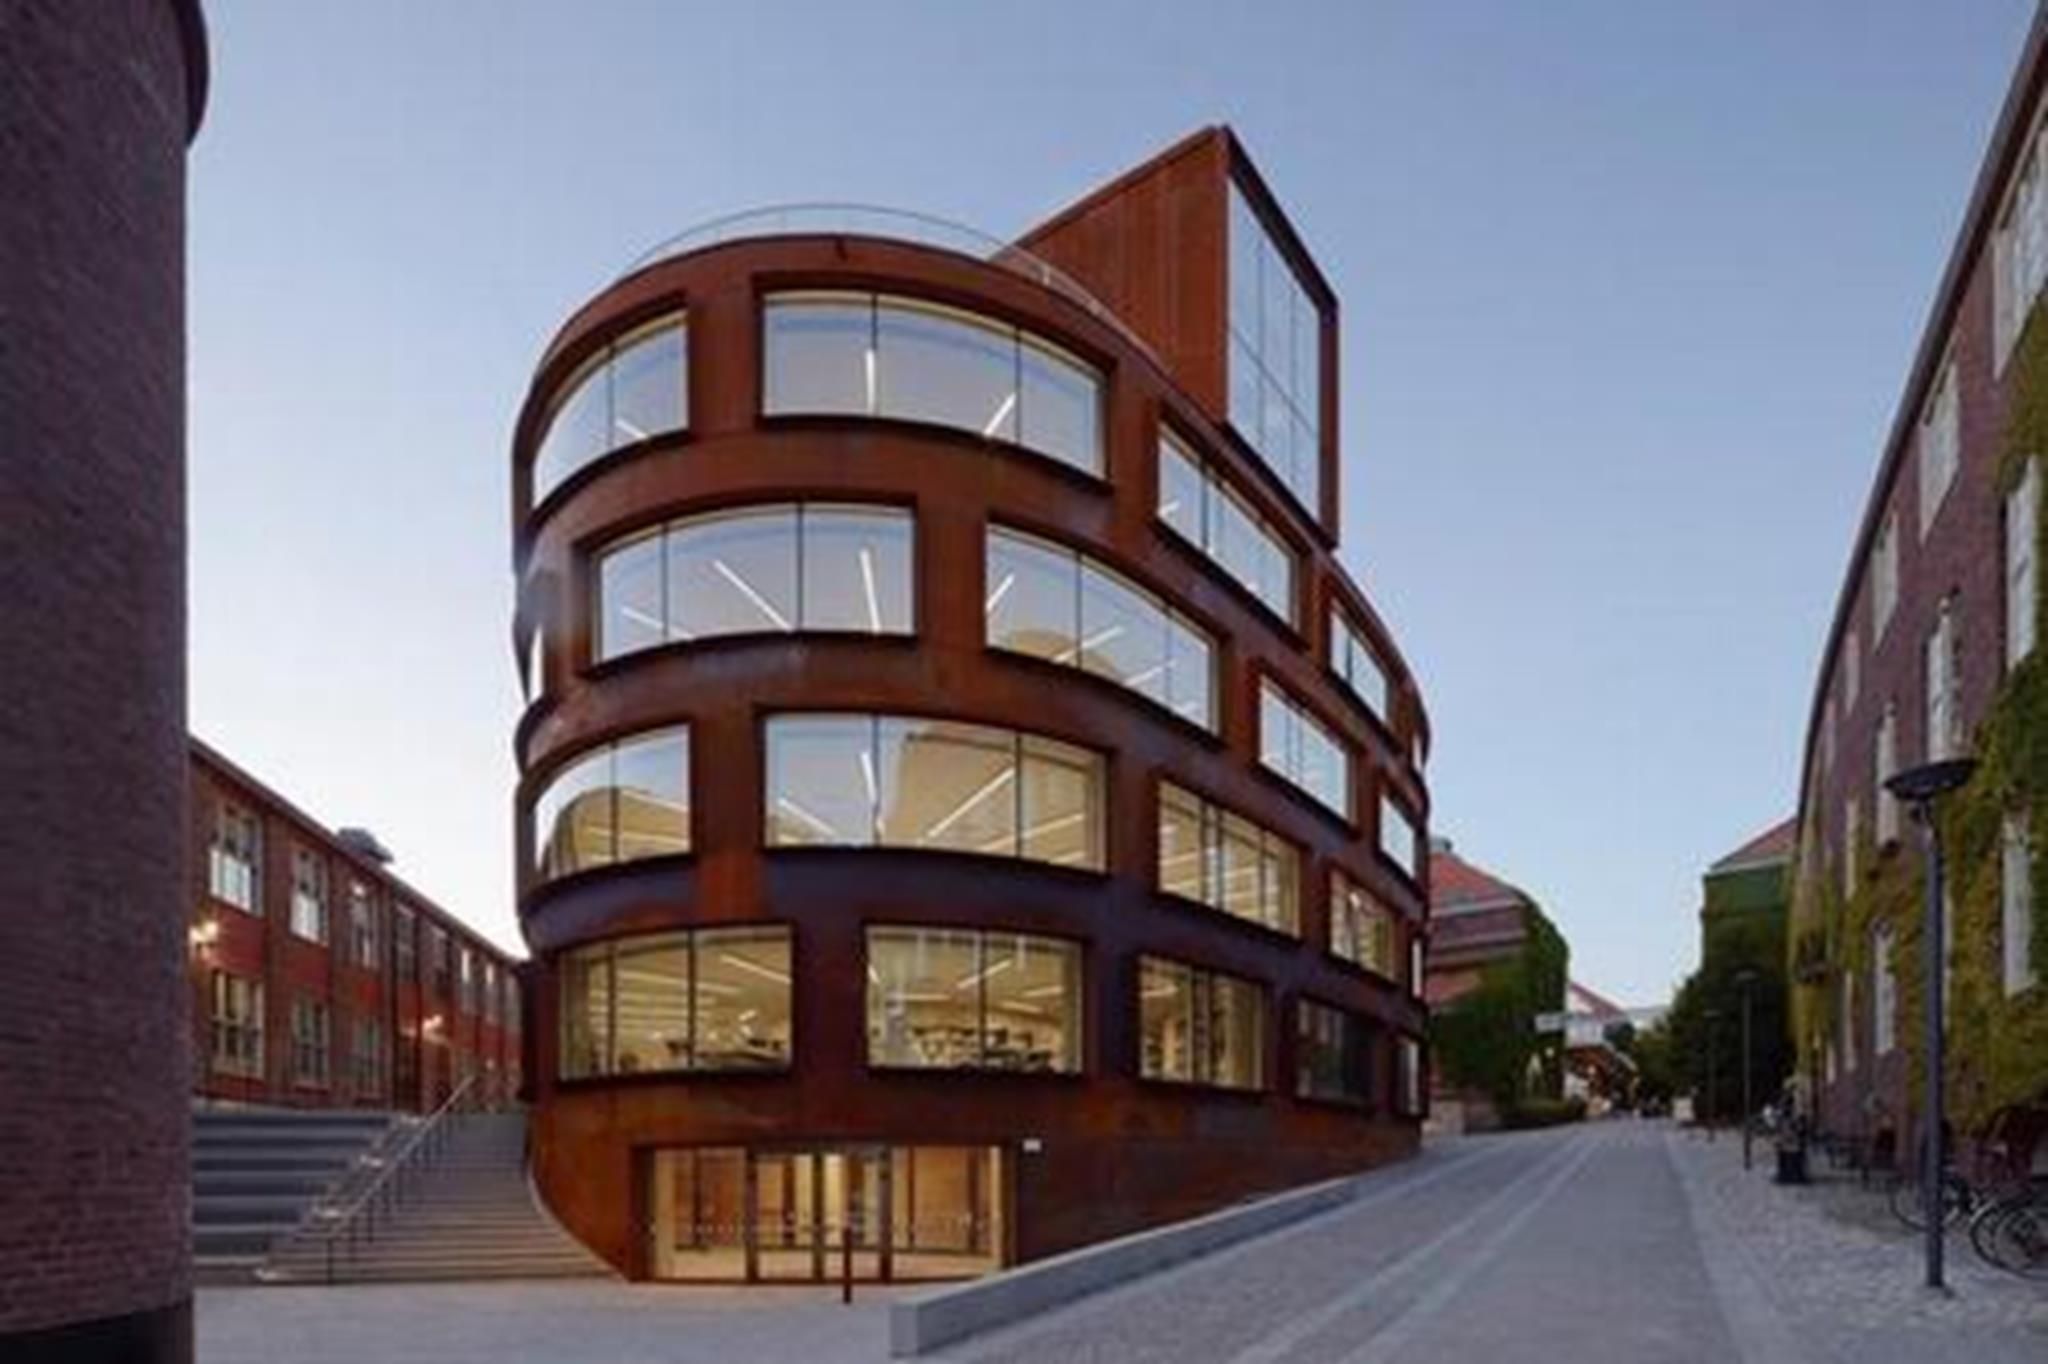 Trường kiến trúc thuộc Viện Công nghệ Hoàng gia Thụy Điển có kiến trúc hiện đại nổi bật giữa không gian kiến trúc cổ xưa. Thiết kế ngôi trường sẽ góp phần khơi gợi sự sáng tạo cho các kiến trúc sư tương lai học tập ở đây.